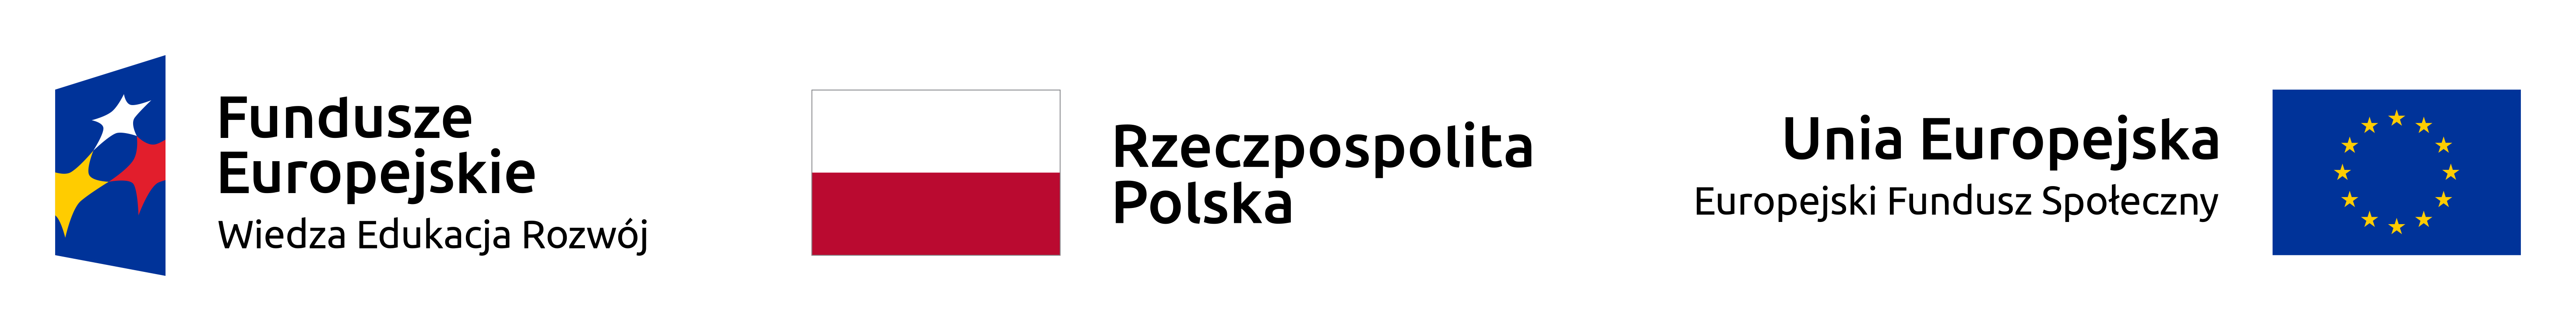 Z lewej strony logotyp Programu Operacyjnego Wiedza Edukacja Rozwój zawierający jedną gwiazdkę białą, jedną żółtą oraz jedną czerwoną na niebieskim tle, z prawej strony logo Unii Europejskiej, żółte gwiazdki ułożone w kółko na niebieskim tle oraz napis Unia Europejska Europejski Funduszu Społeczny. Na środku biało-czerwona flaga Polski z napisem Rzeczypospolita Polska